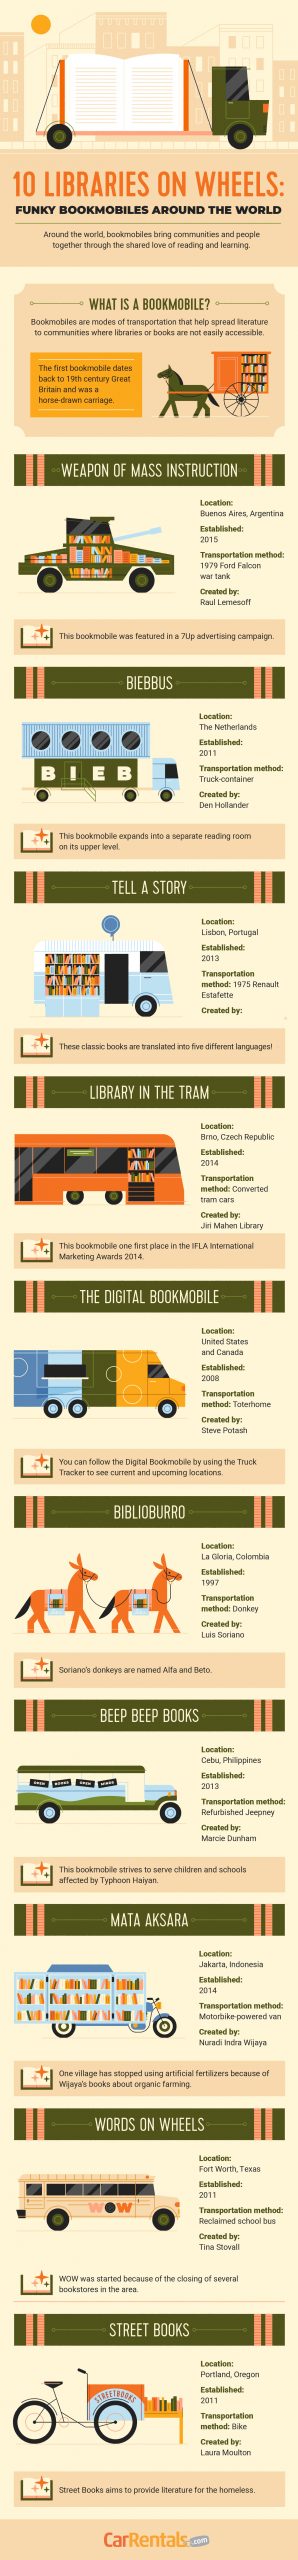 bookmobiles